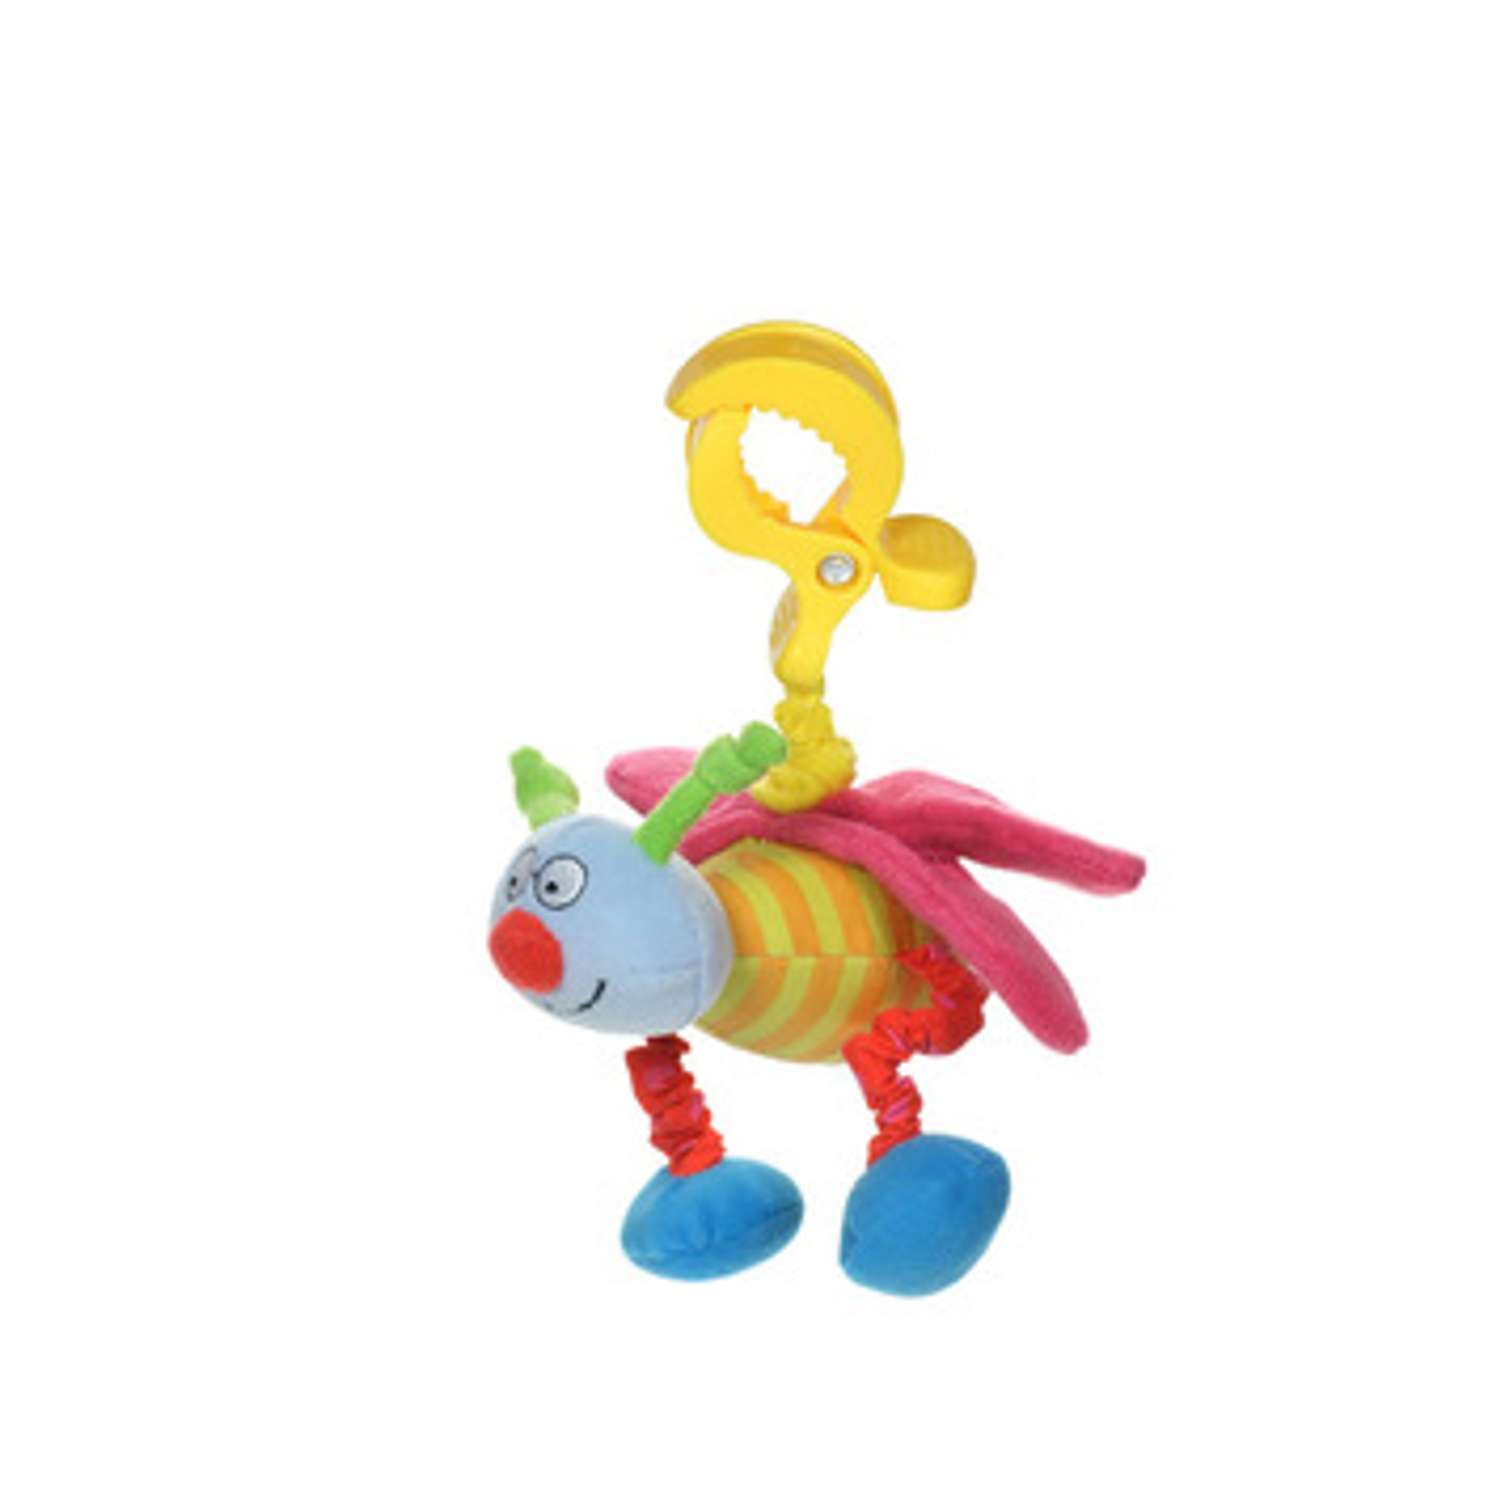 Игрушка-подвеска Taf Toys Пчелка в ассортименте - фото 2